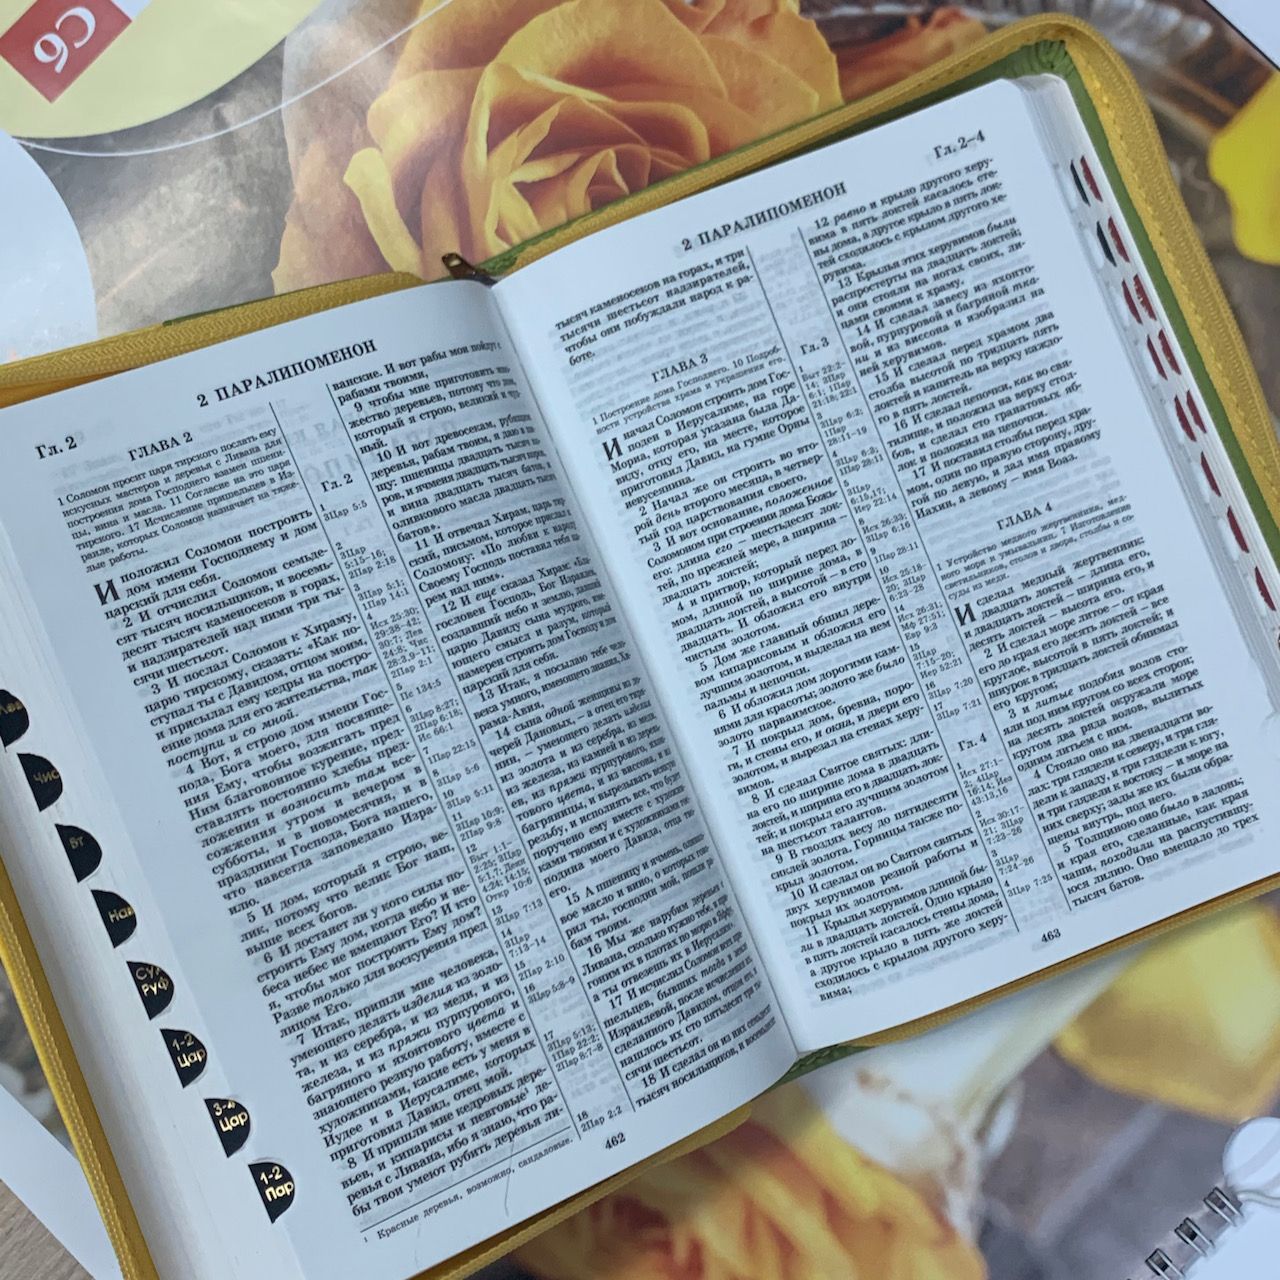 БИБЛИЯ 046 DTzti формат, переплет из искусственной кожи на молнии с индексами, надпись золотом "Библия", цвет салатовый/желтый полукругом, средний формат, 132*182 мм, цветные карты, шрифт 12 кегель